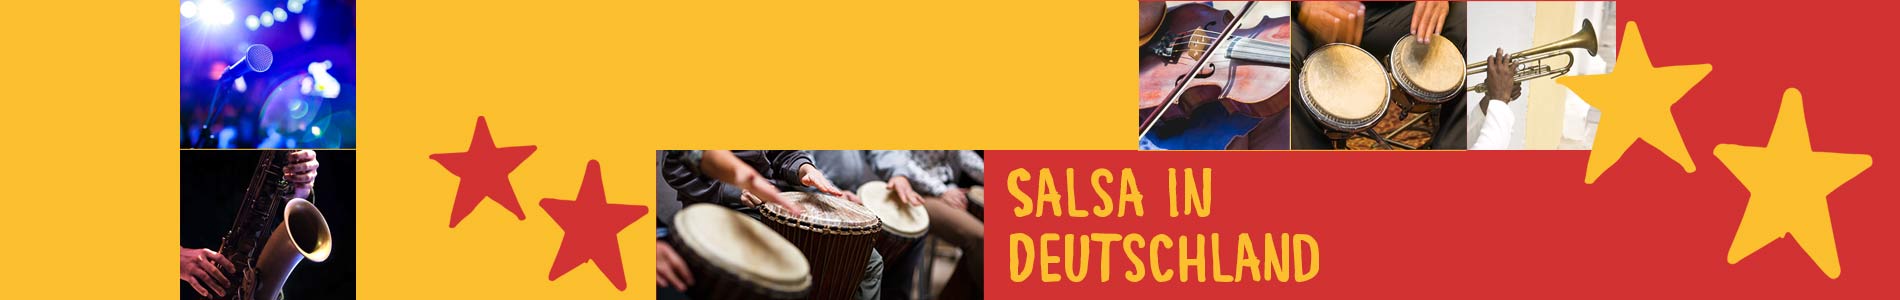 Salsa in Brunnthal – Salsa lernen und tanzen, Tanzkurse, Partys, Veranstaltungen